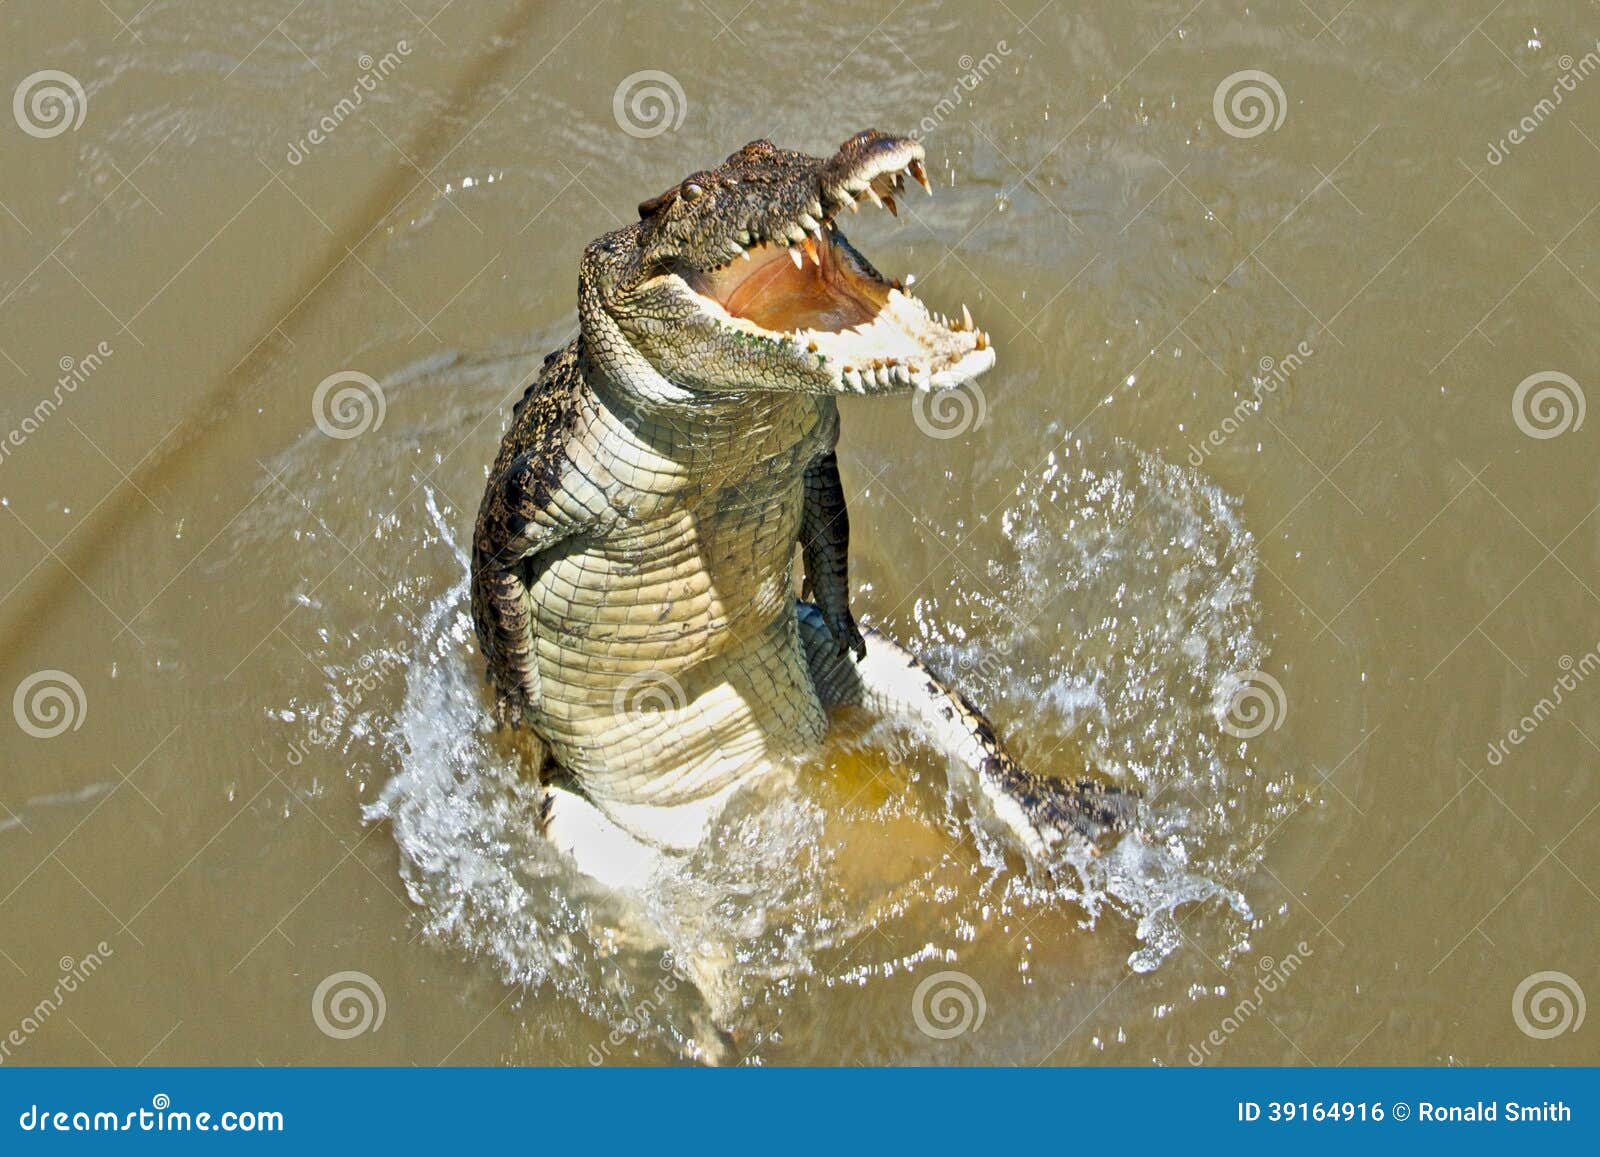 Крокодилы в соленой воде. Гребнистый крокодил прыжок. Крокодил выпрыгивает из воды. Крокодил из воды. Крокодил выныривает из воды.